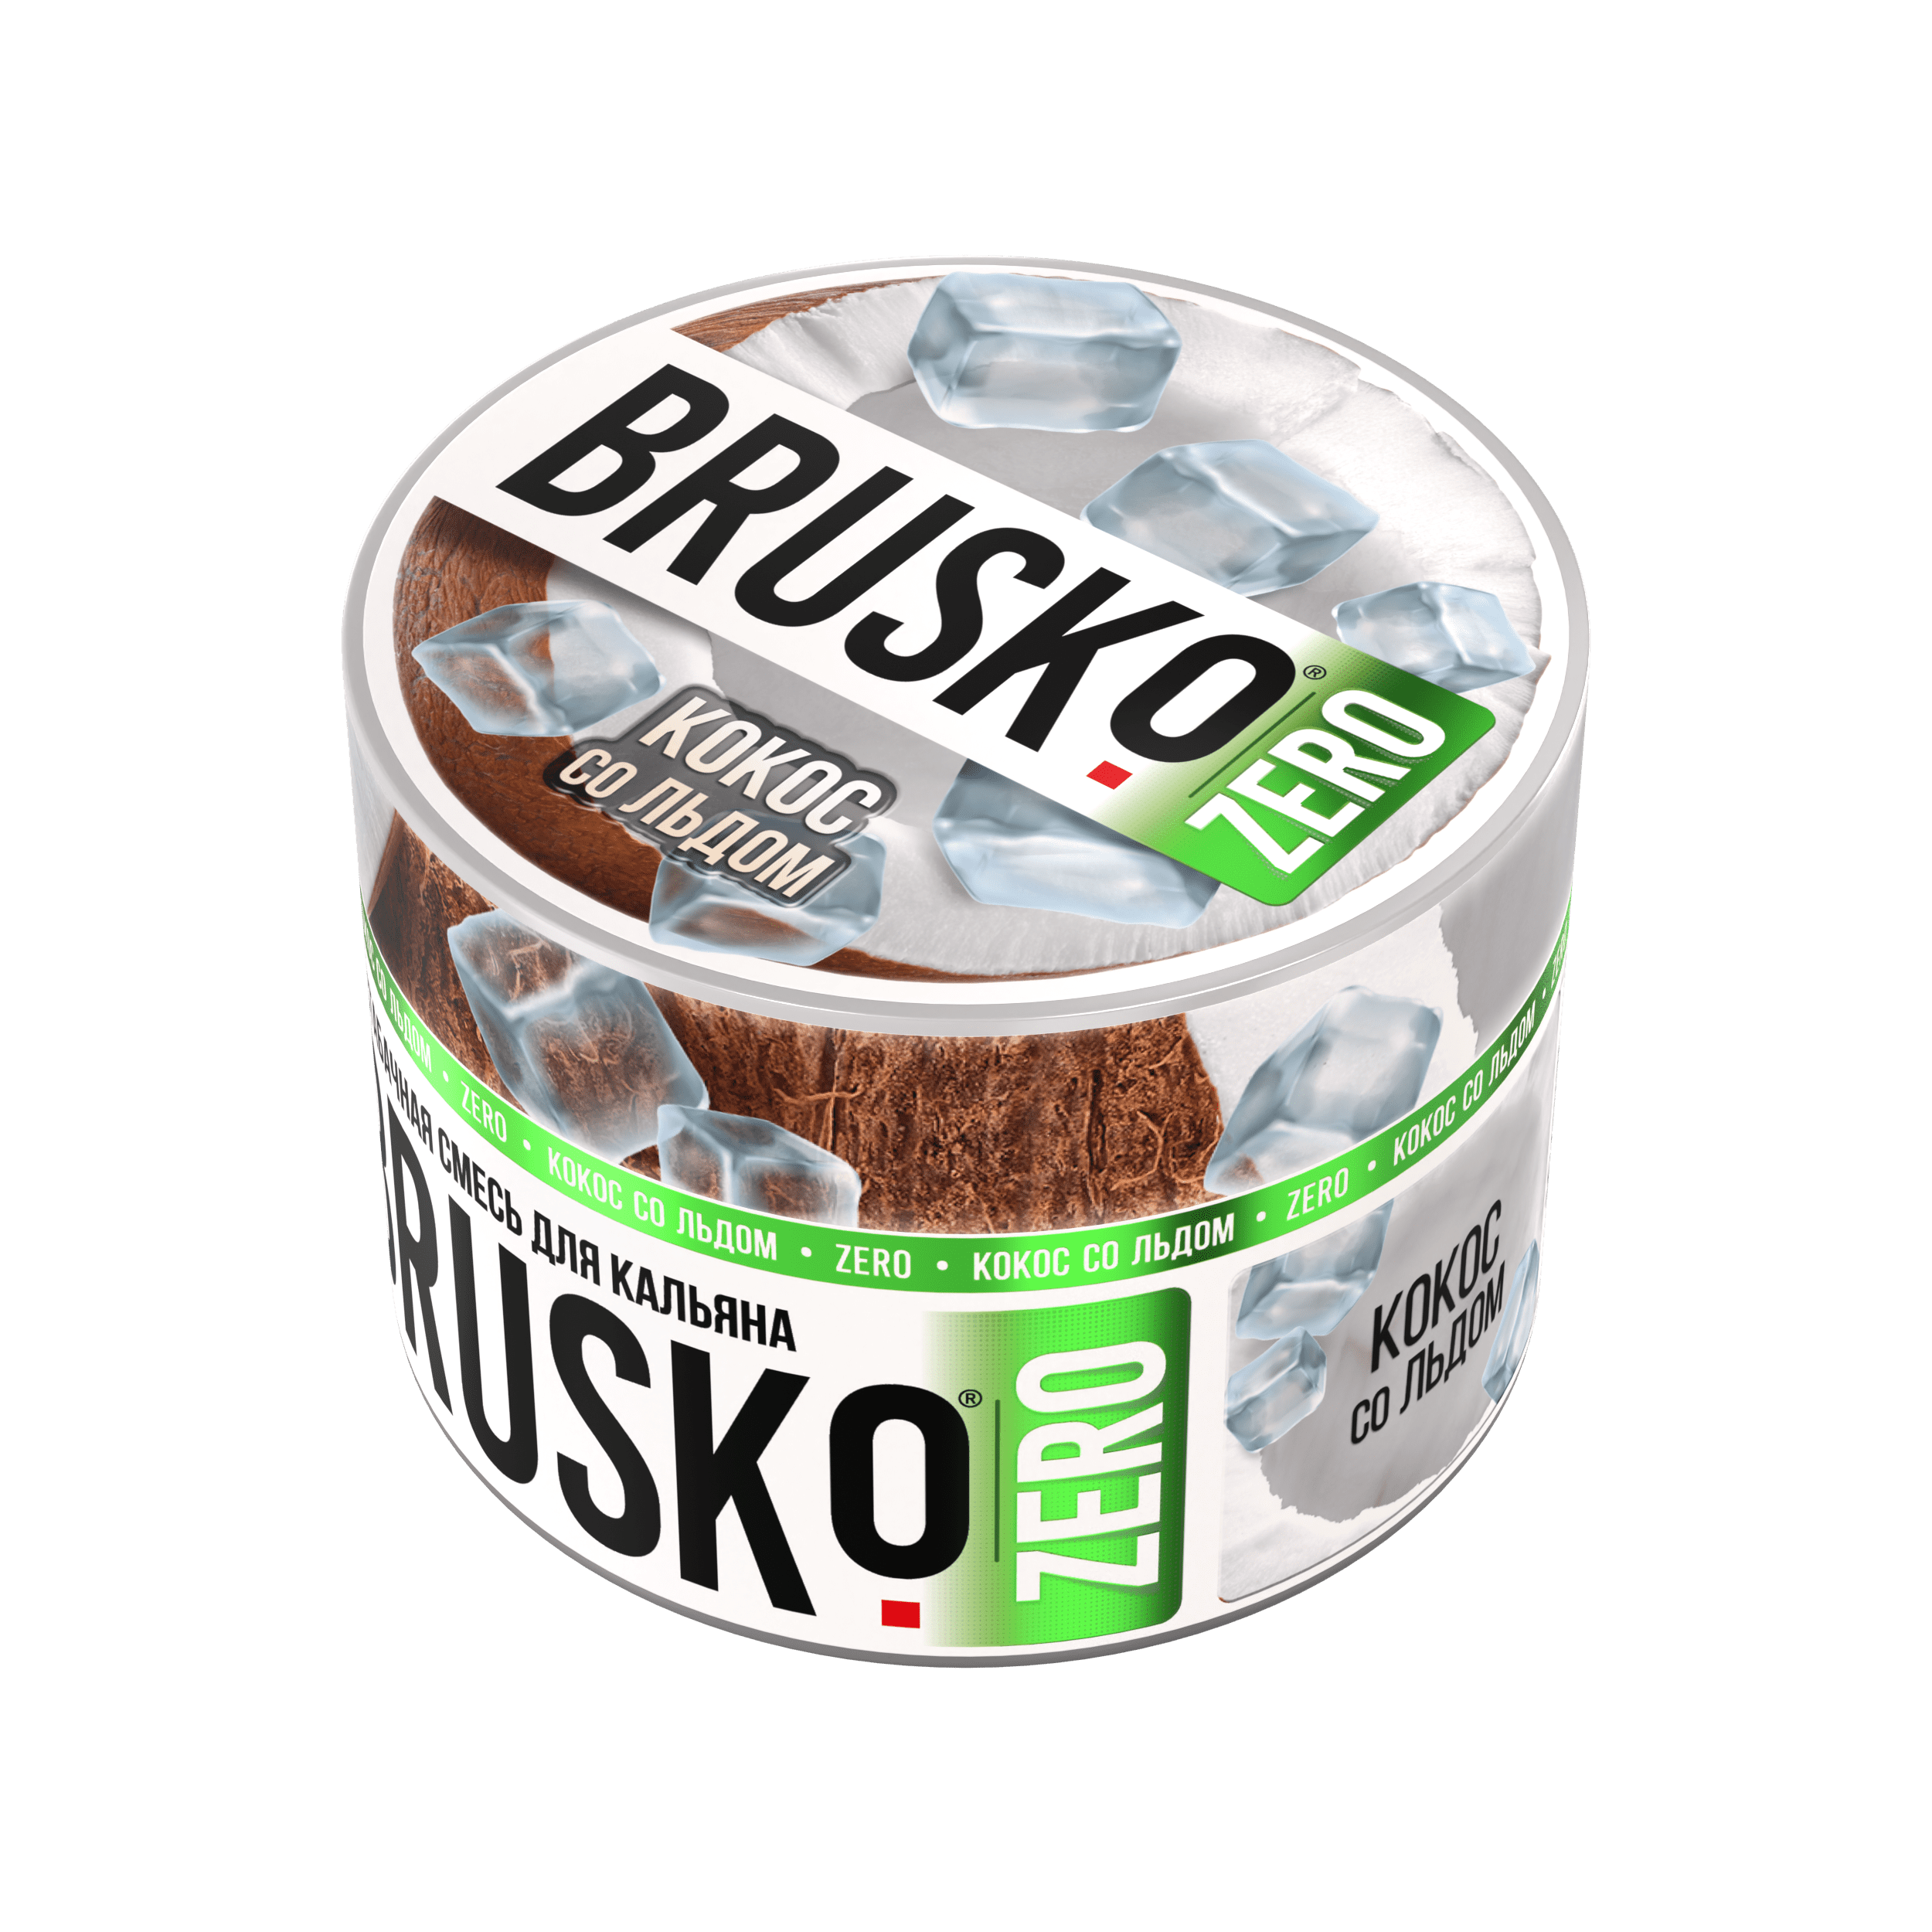 Бестабачная смесь для кальяна BRUSKO, 50 г, Кокос со льдом, Zero (М)